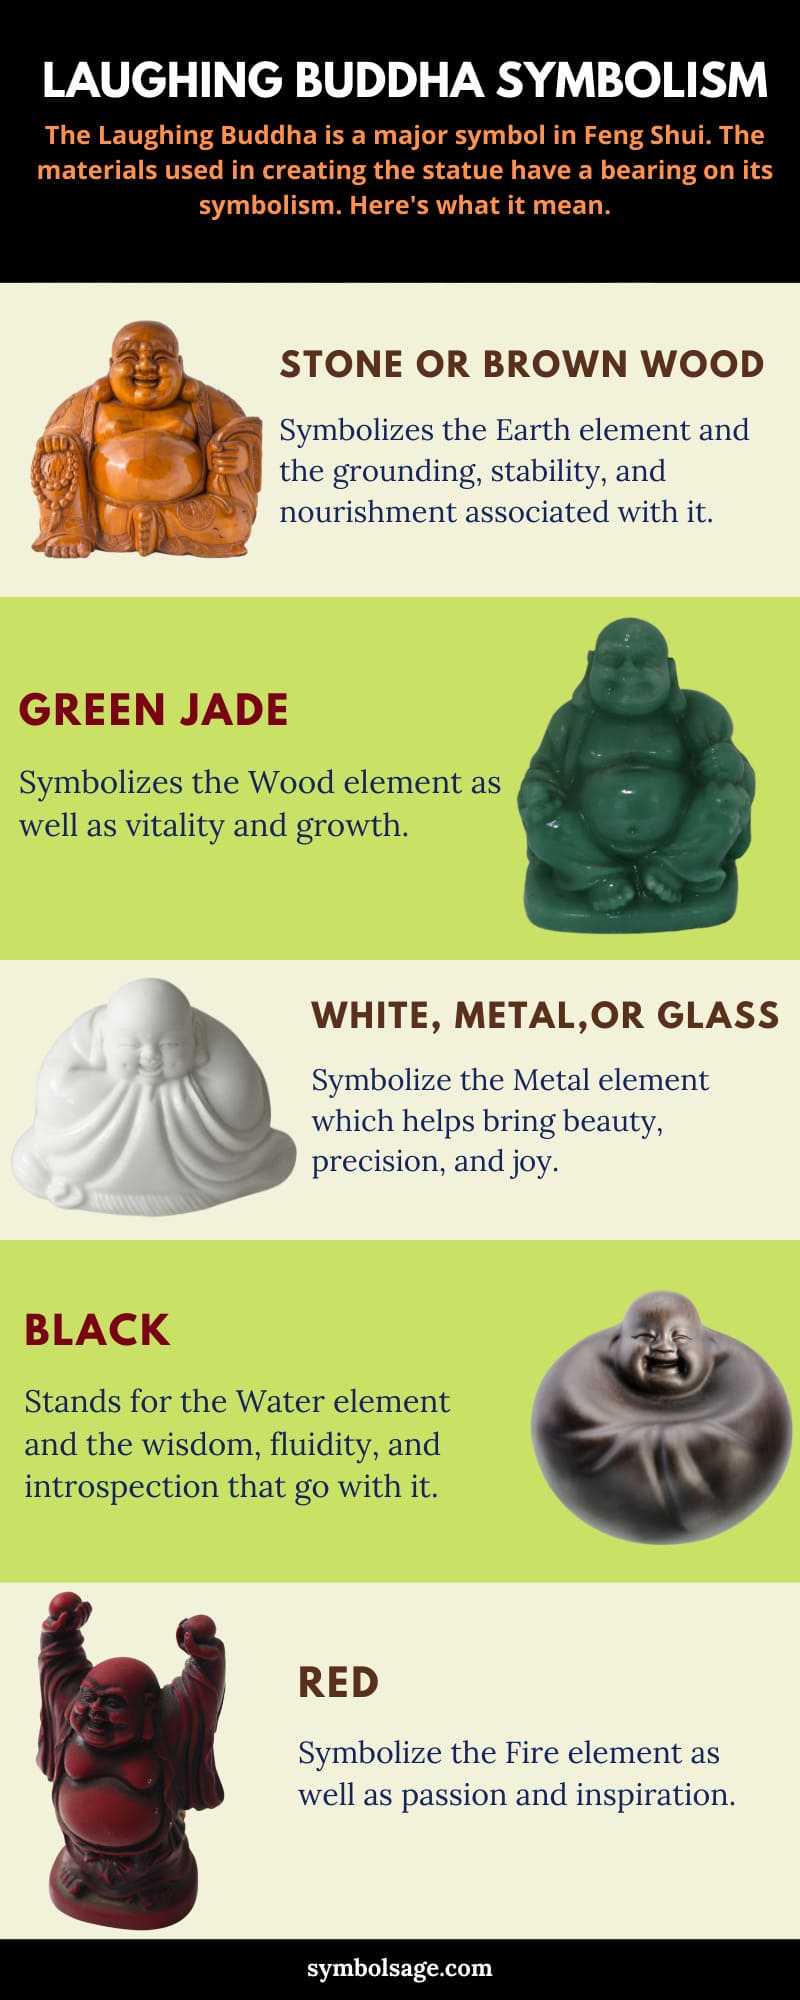 Significados de los diferentes materiales del Buda sonriente